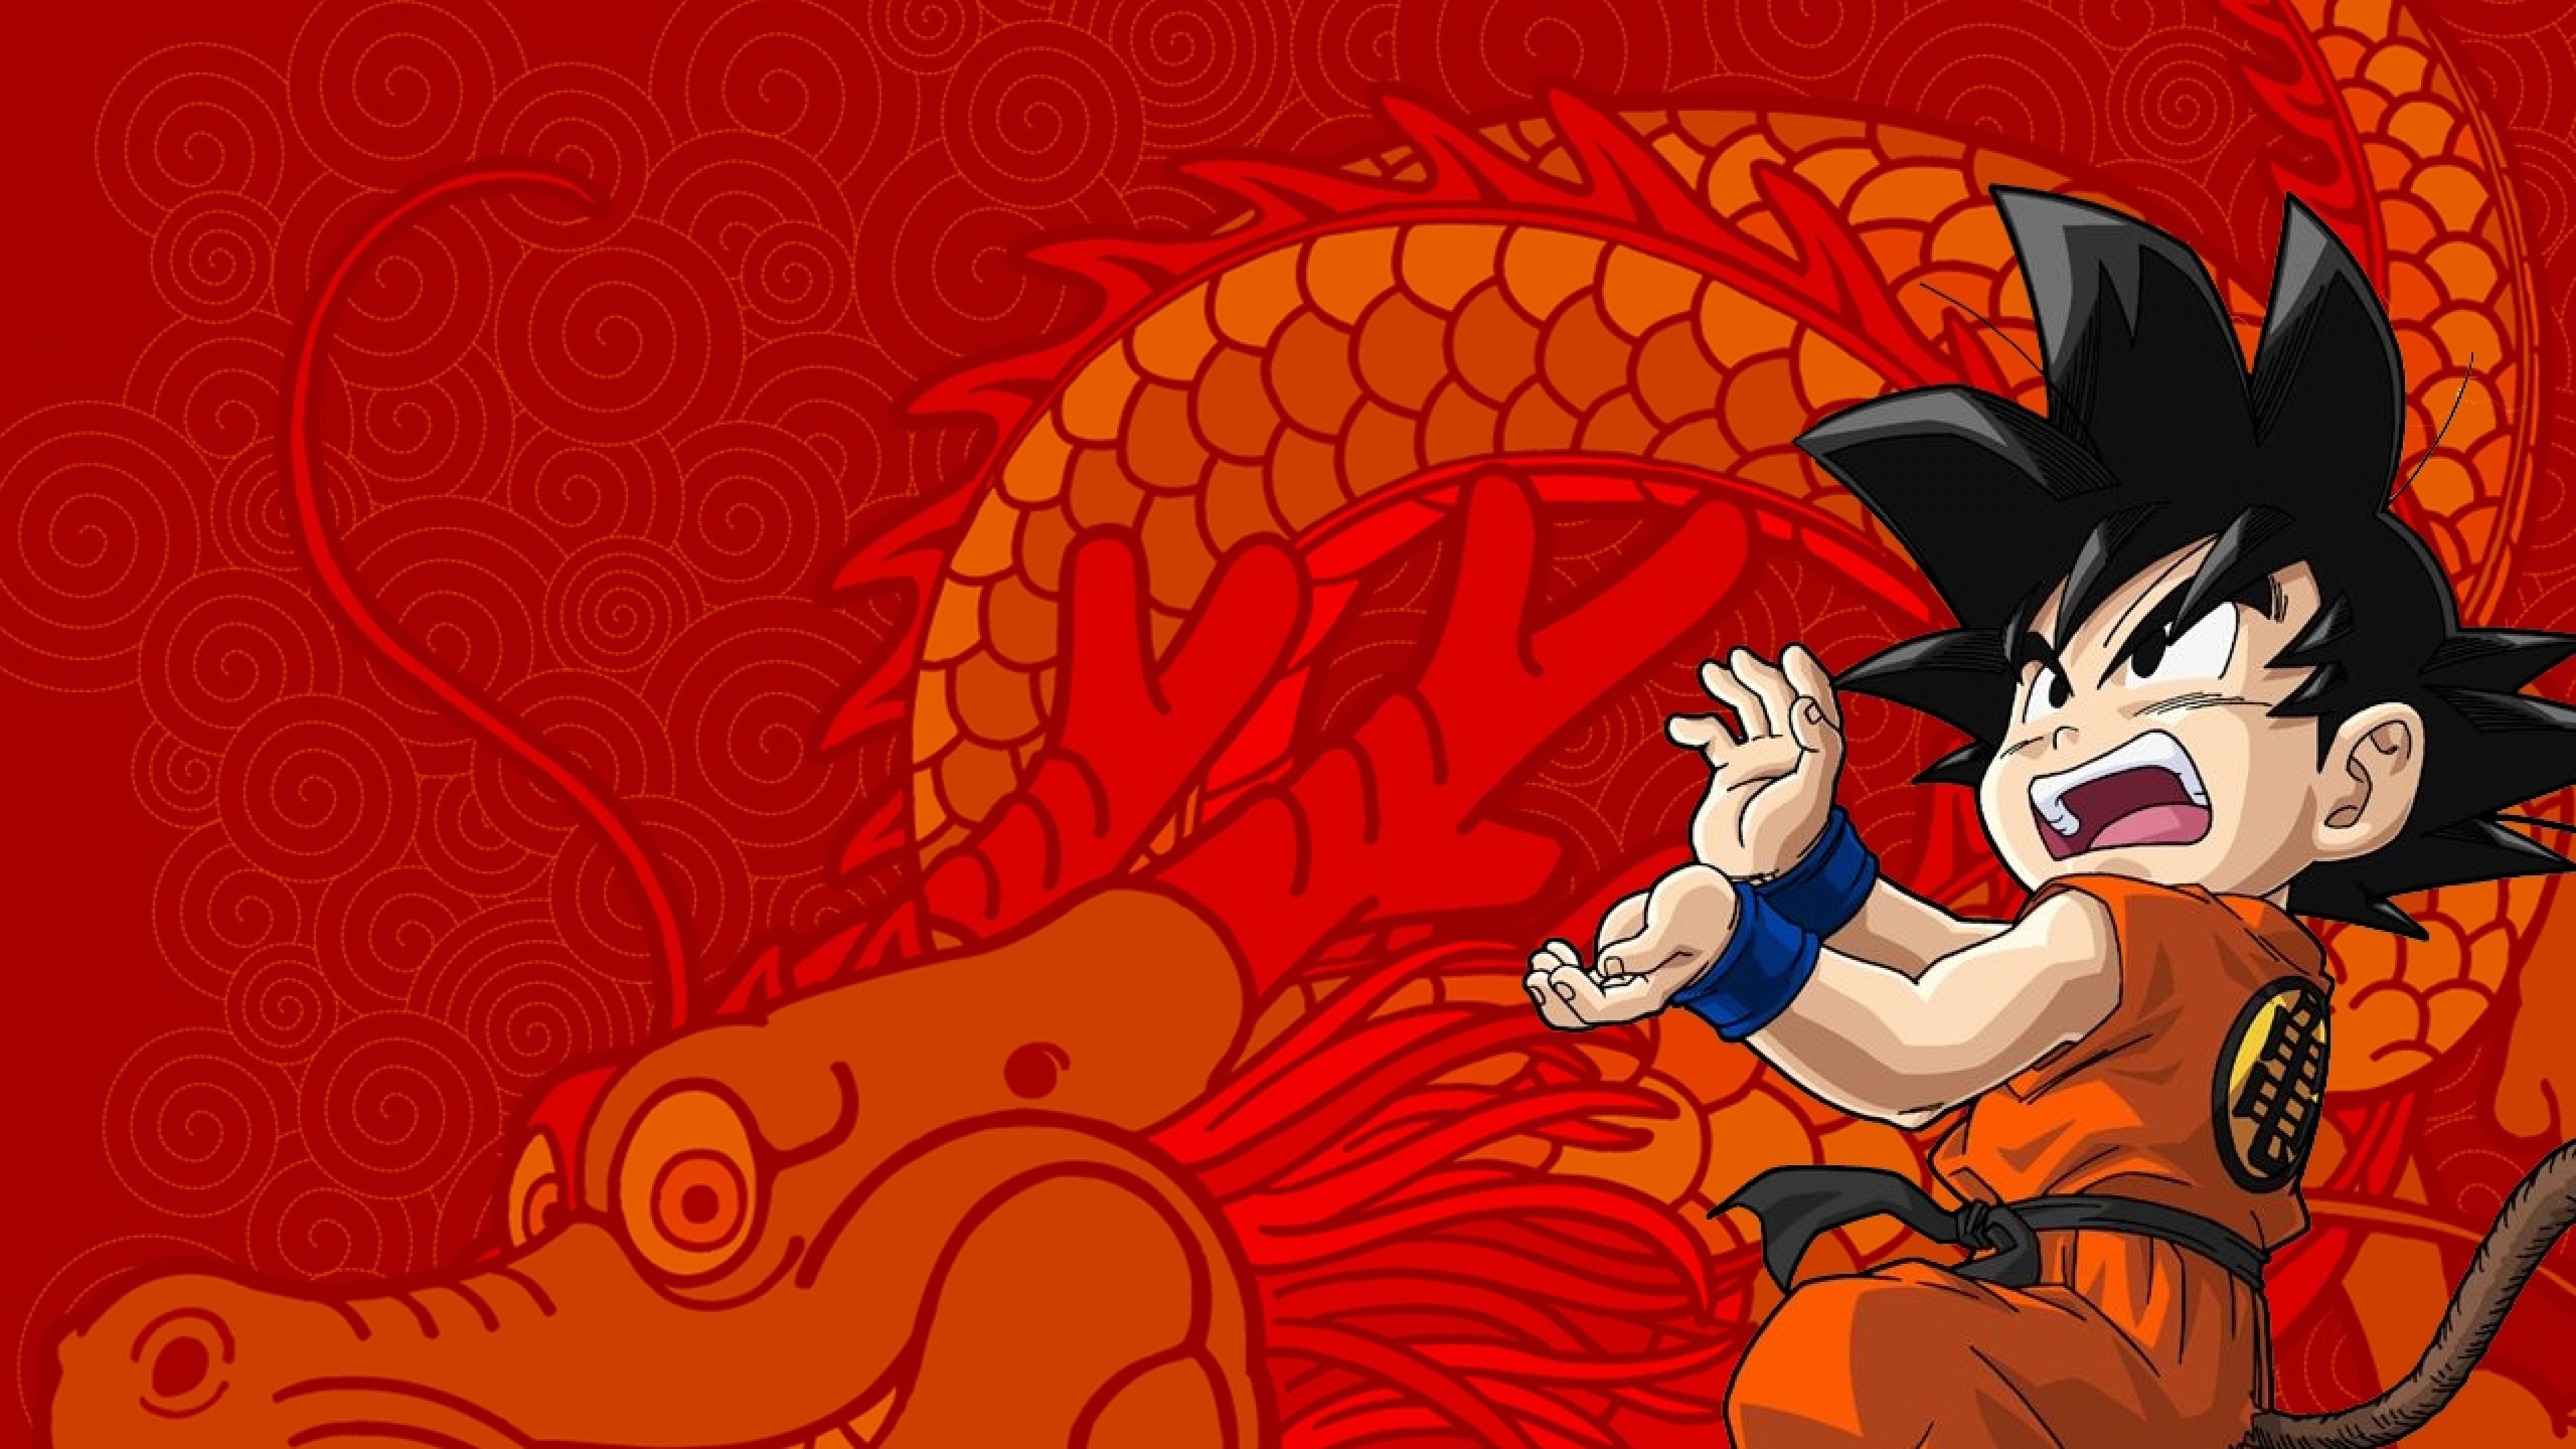 3840x2160 Wallpaper: Cool Goku Wallpaper DBZ